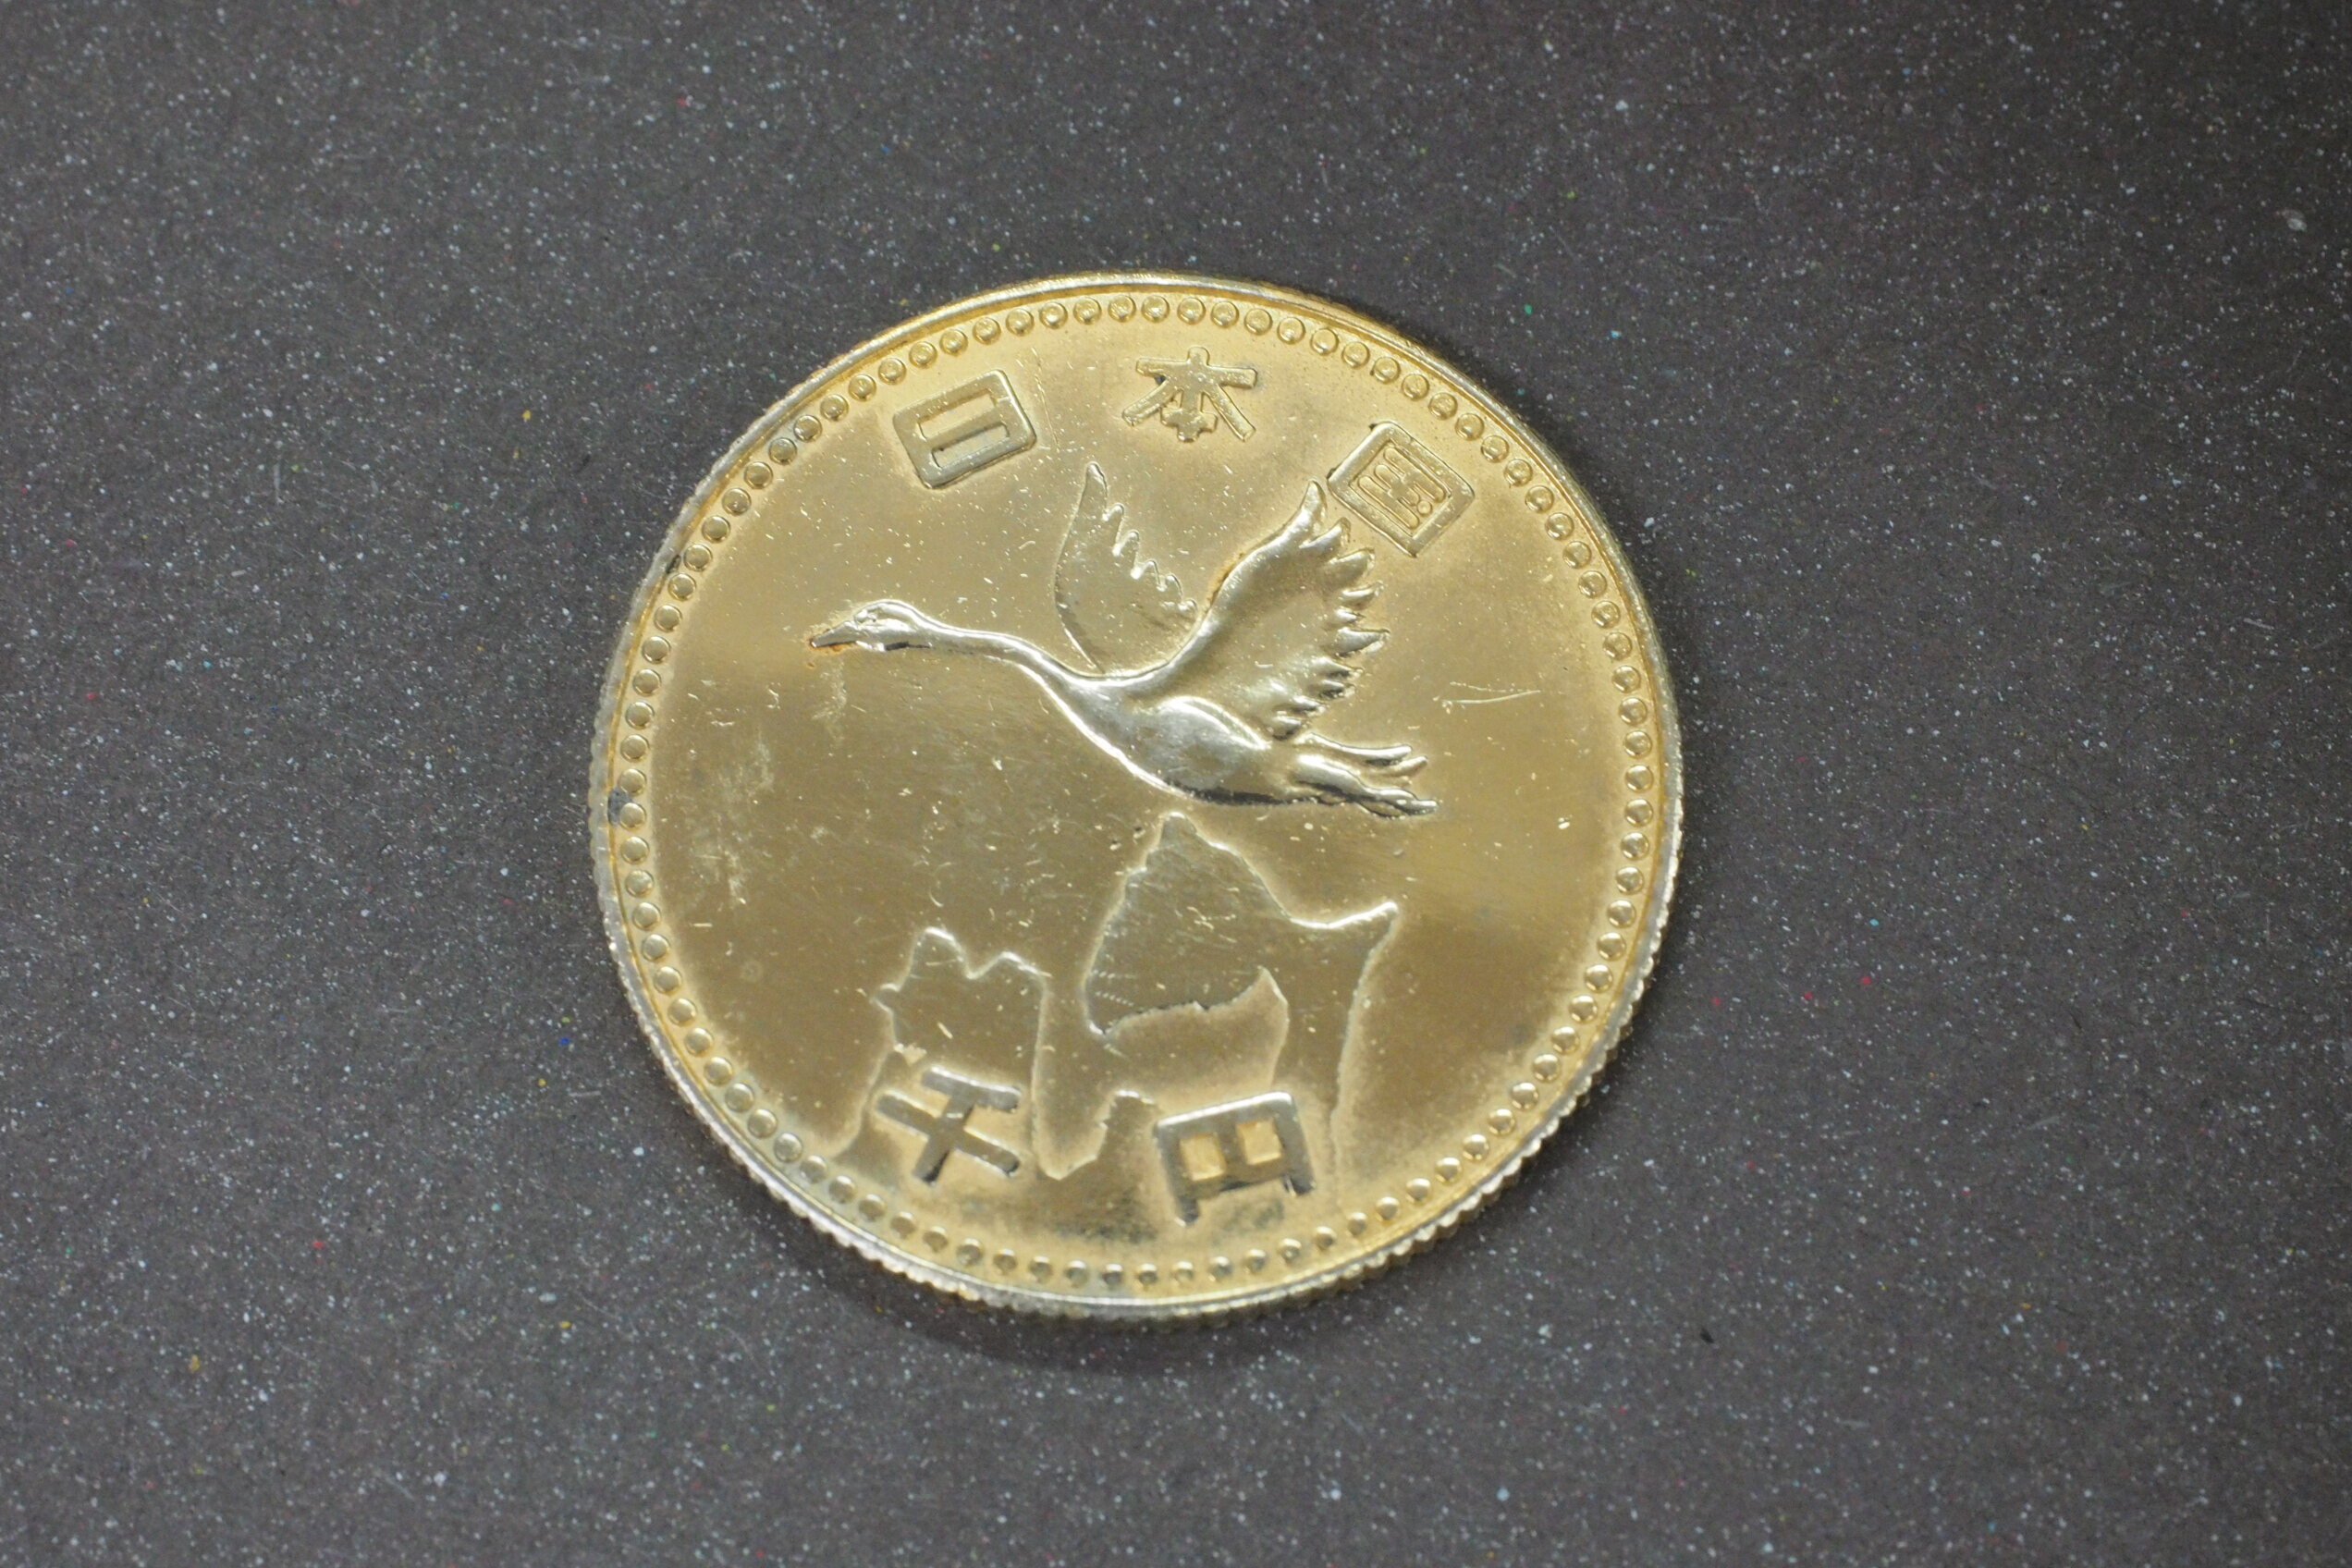 日本国 千円」と刻印された謎のメダル。その正体を探ってみたが、全く分からなかった。 | ハフポスト NEWS